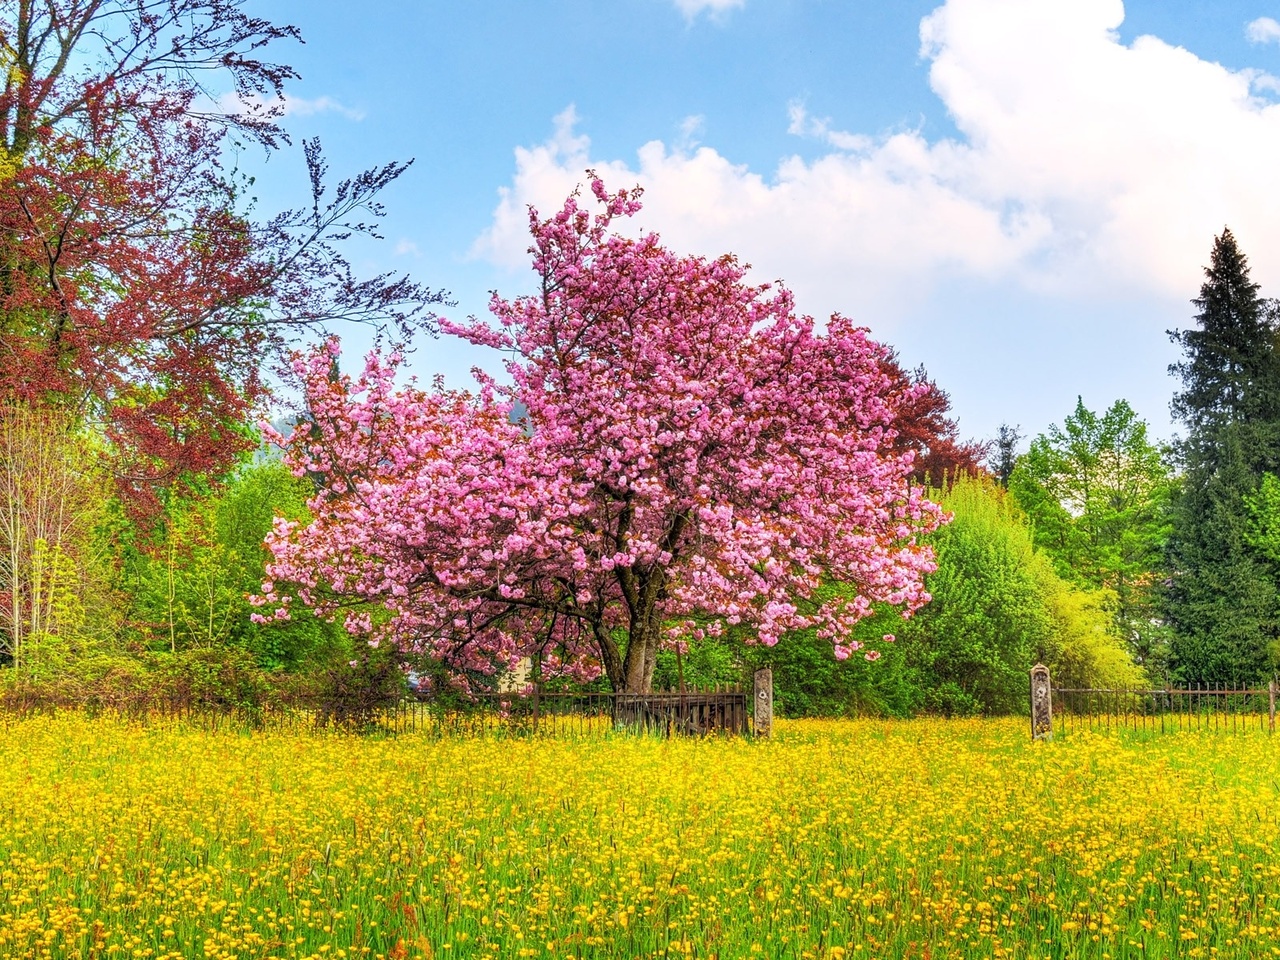 Сакура в цвету, красивое дерево с розовыми листьями HD фото картинки, обои рабочий стол